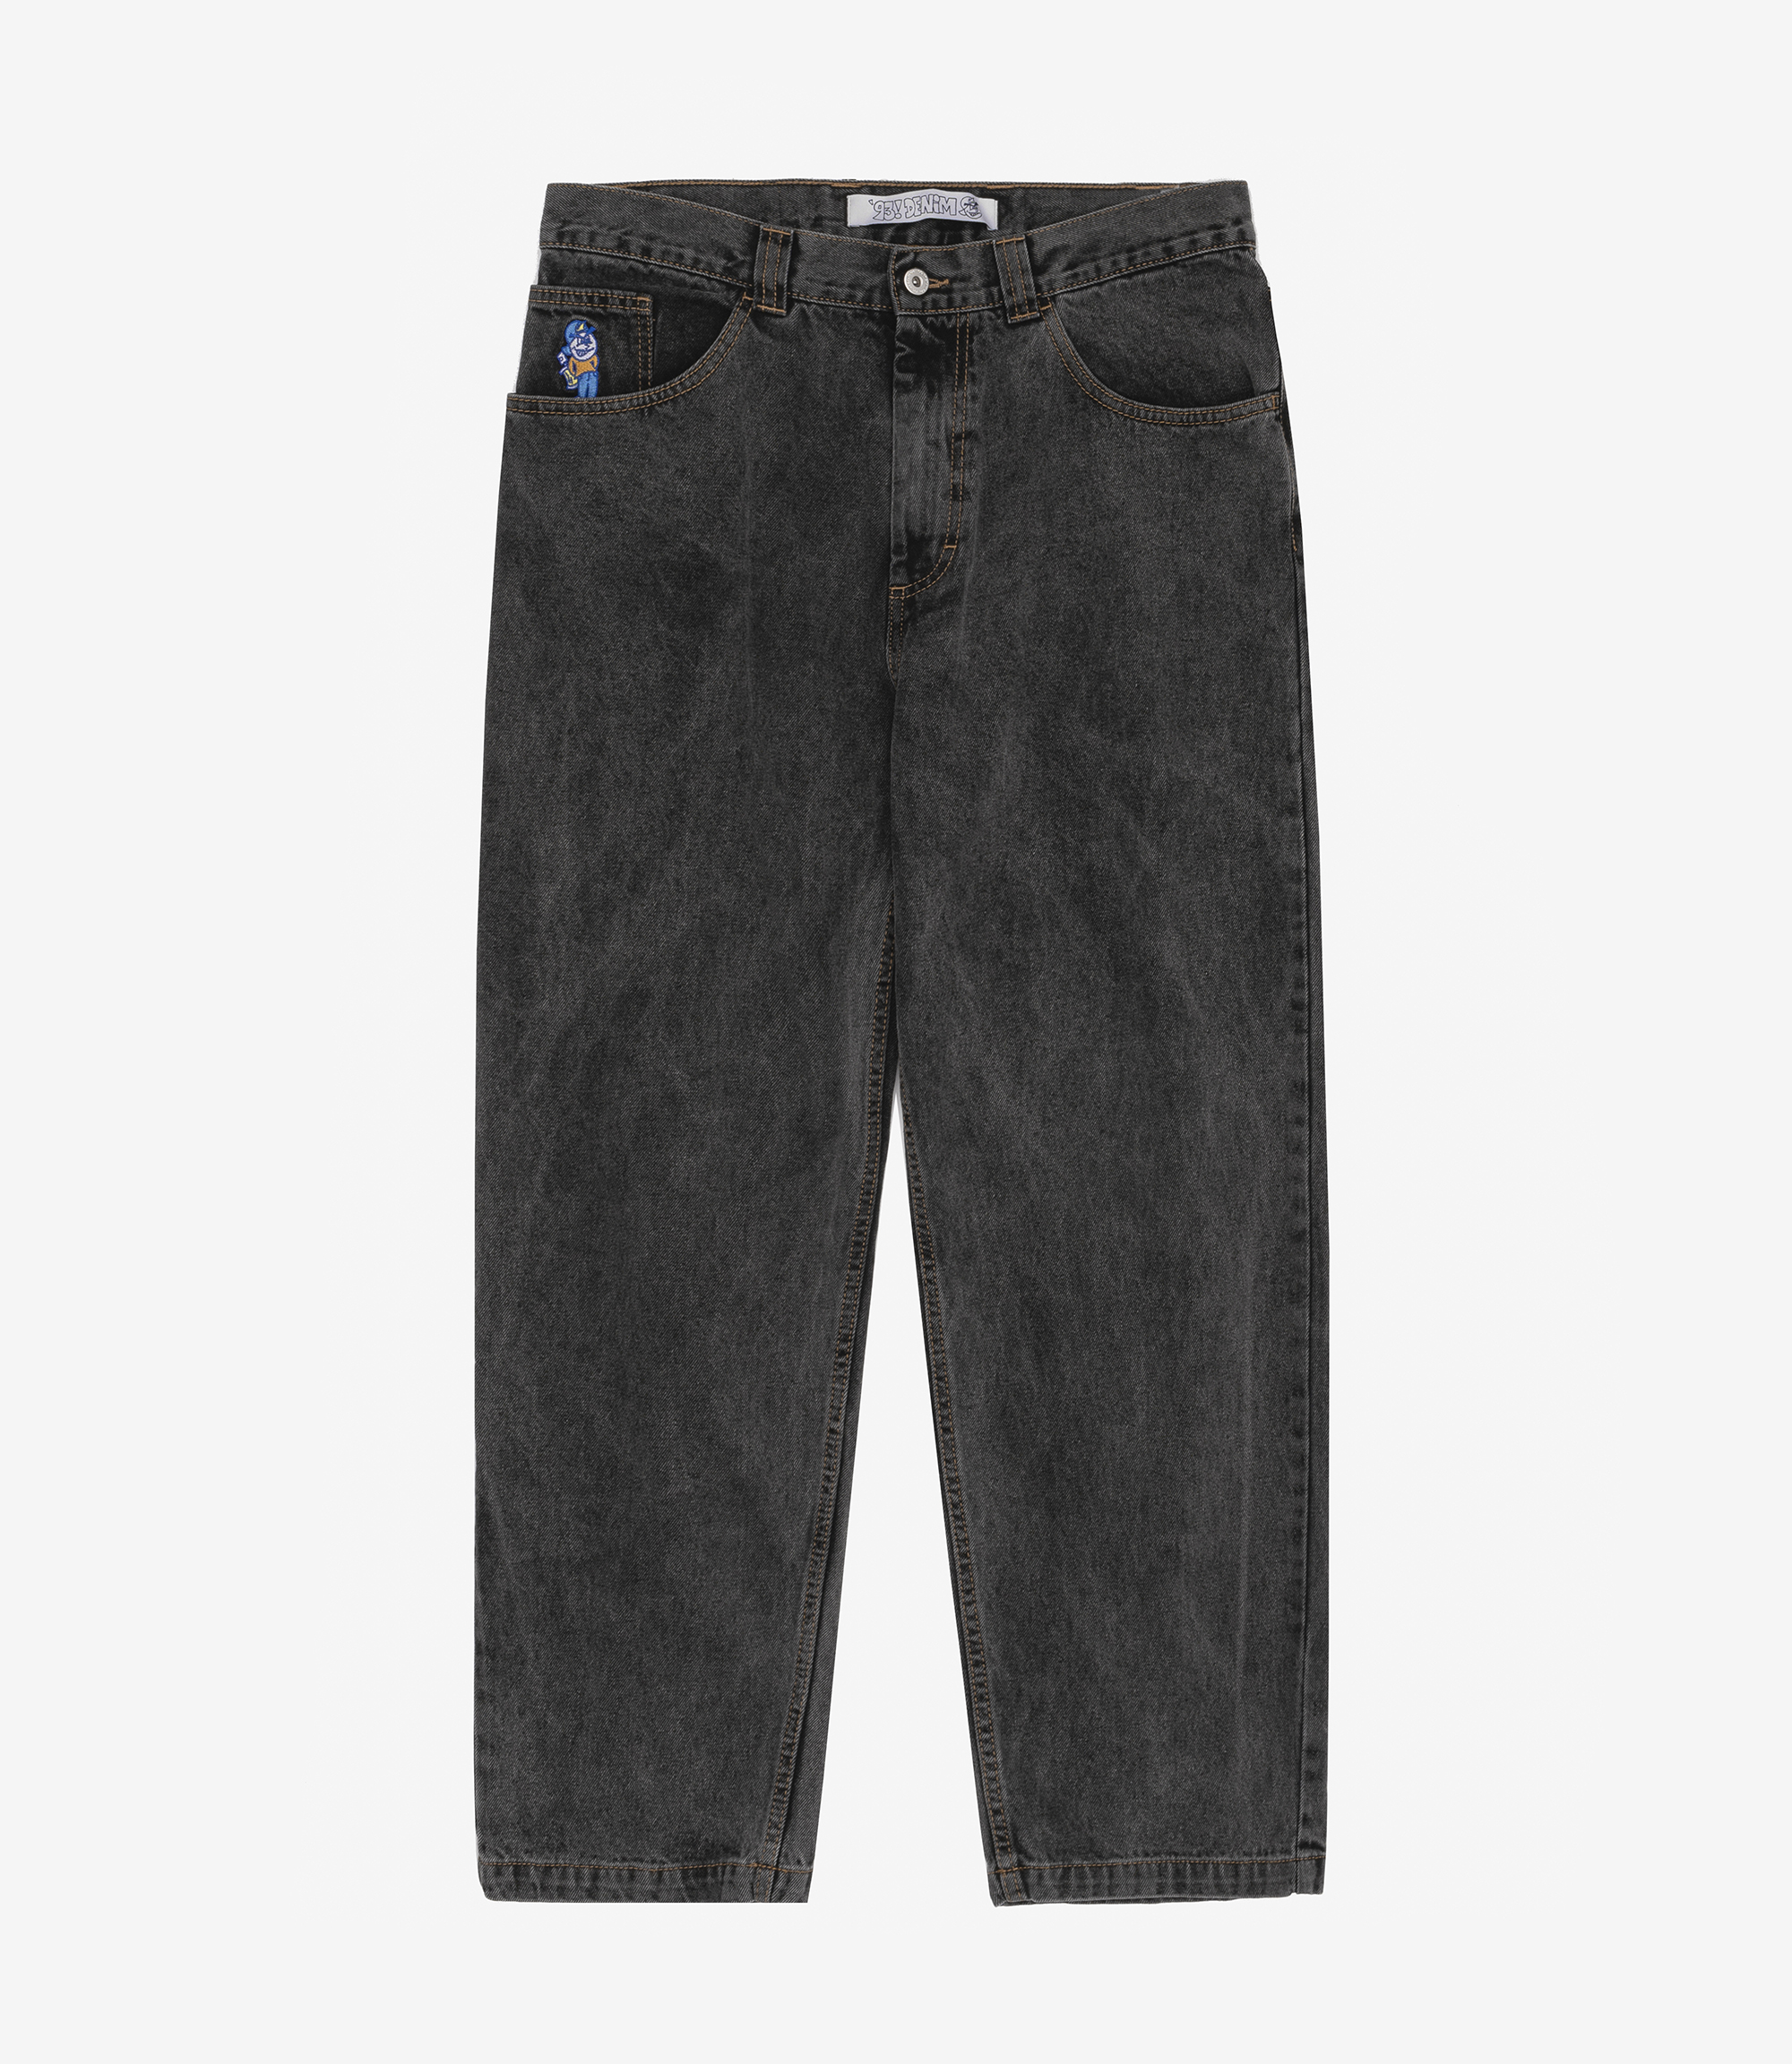 Shop Polar Skate Co '93 Denim Jeans Washed Black at itk online 